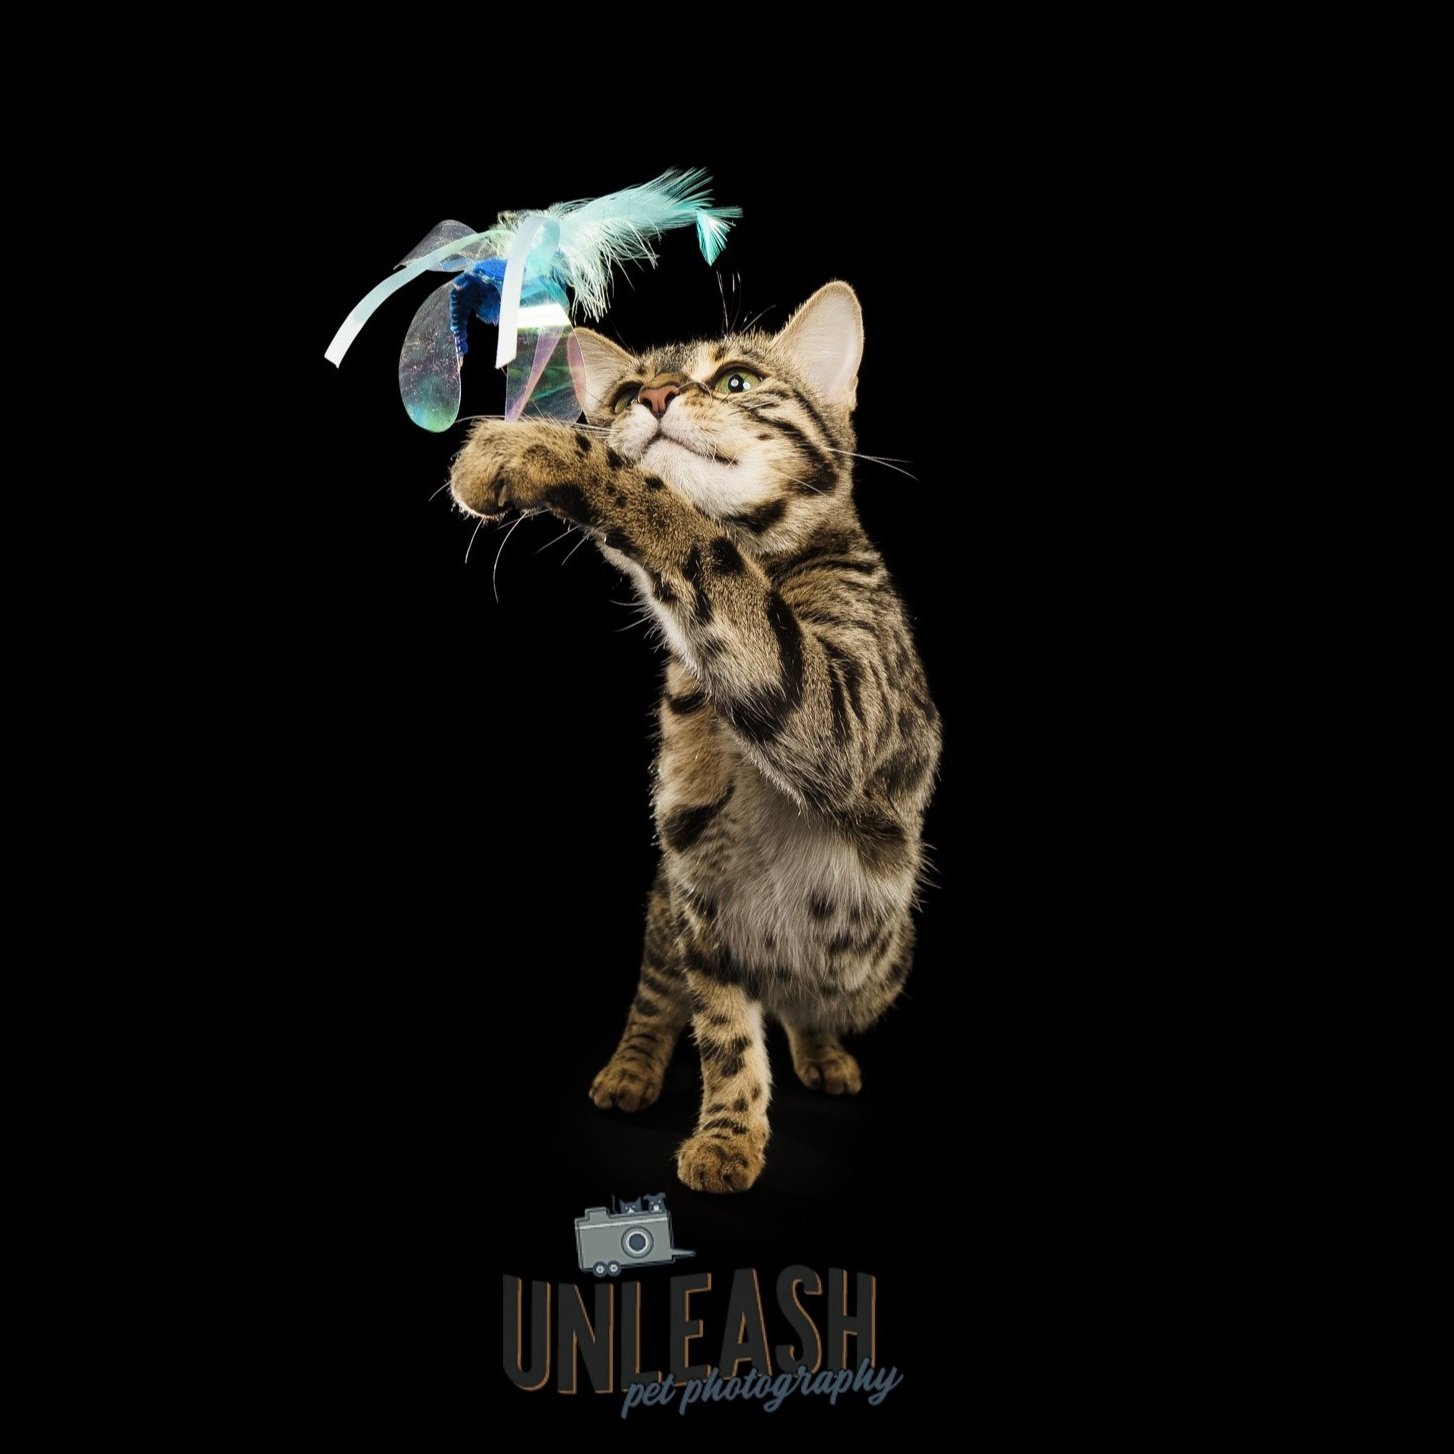 Unleash Pet Photography - BLOG